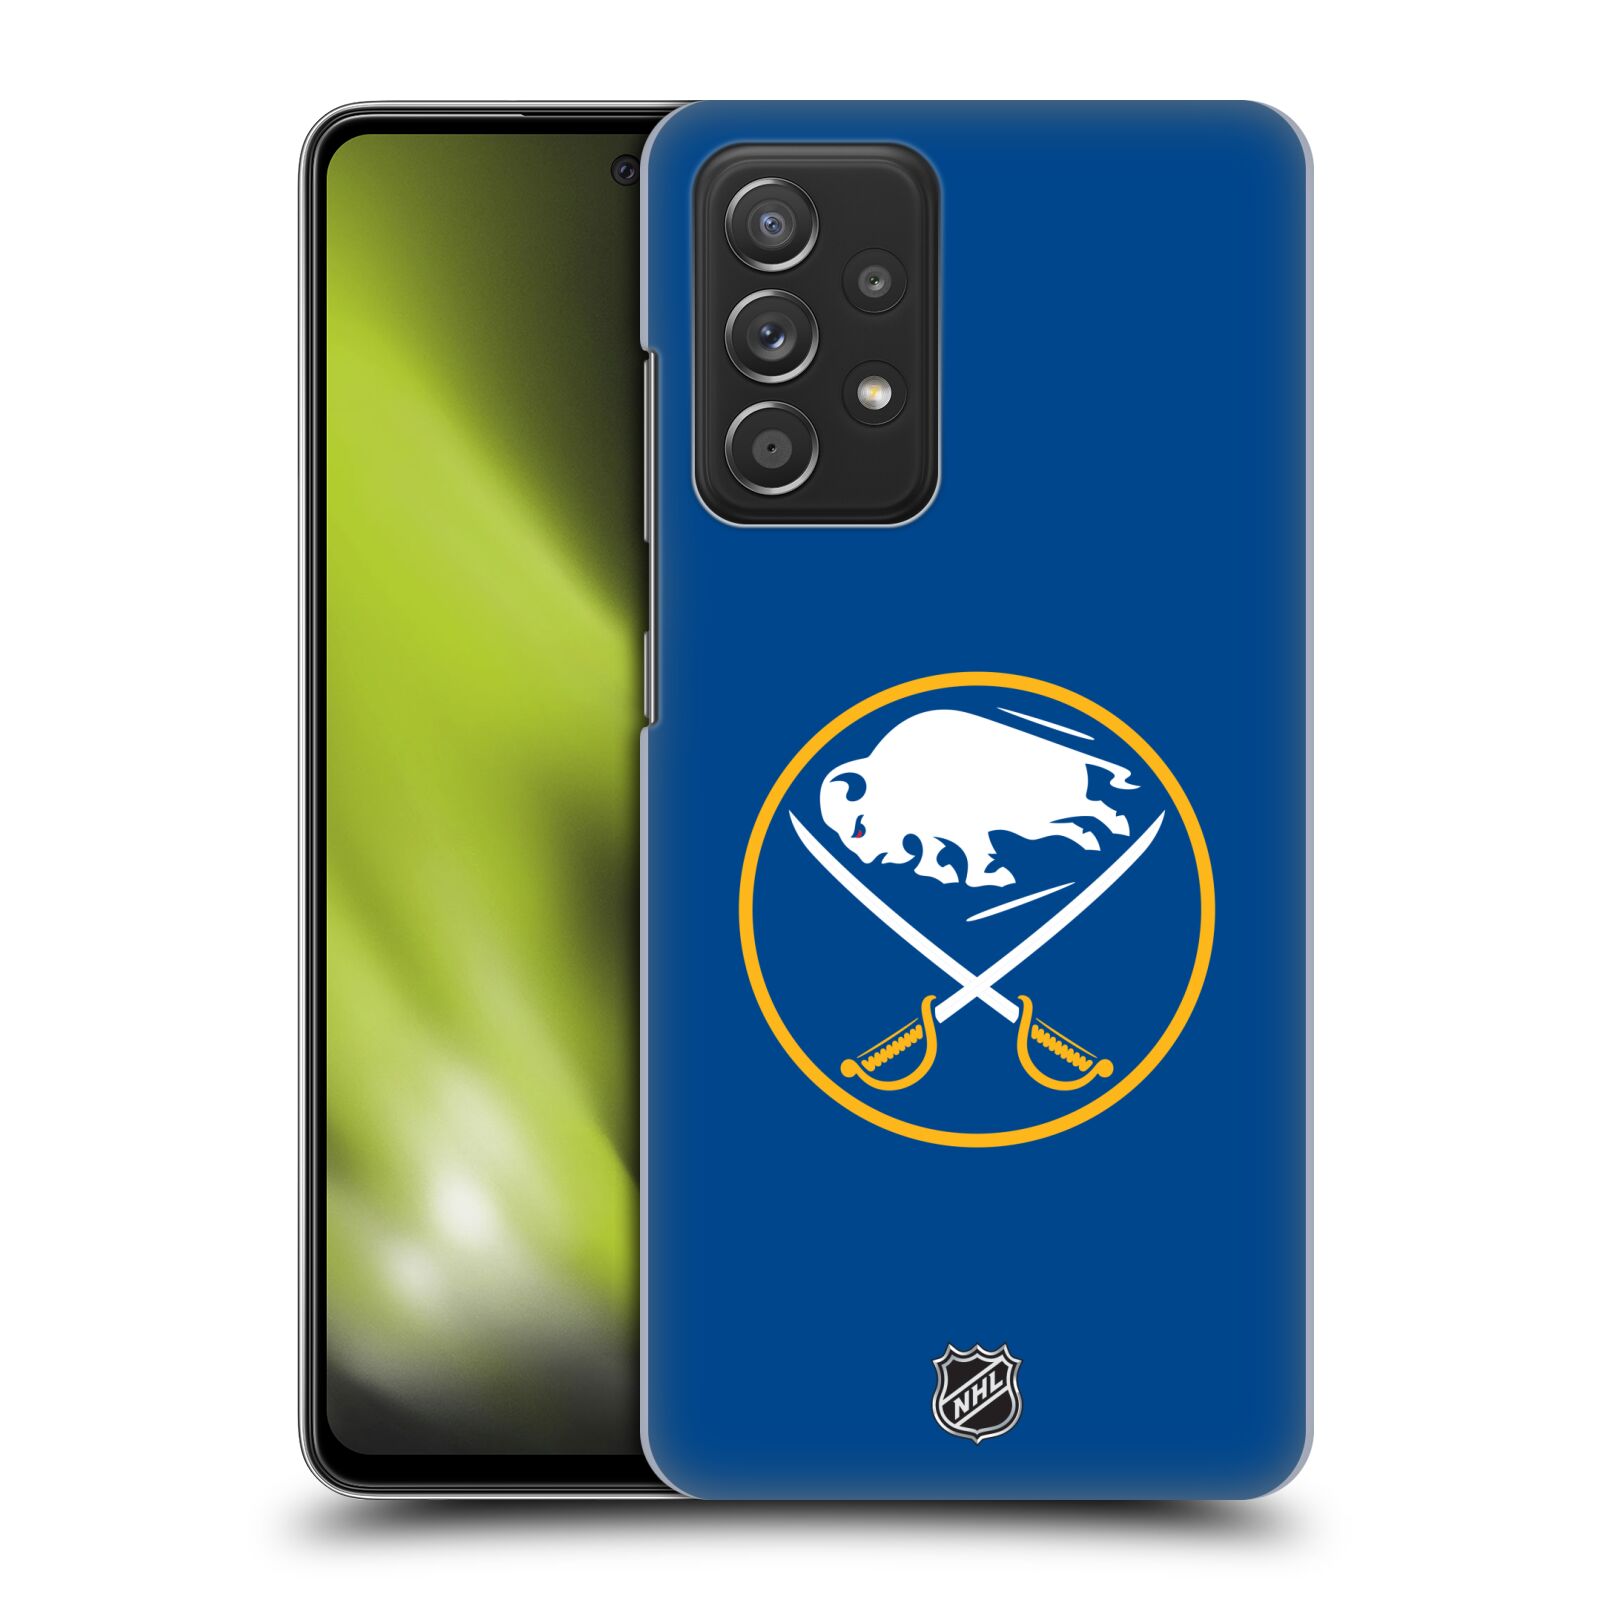 Pouzdro na mobil Samsung Galaxy A52 / A52 5G / A52s 5G - HEAD CASE - Hokej NHL - Buffalo Sabres - modré pozadí